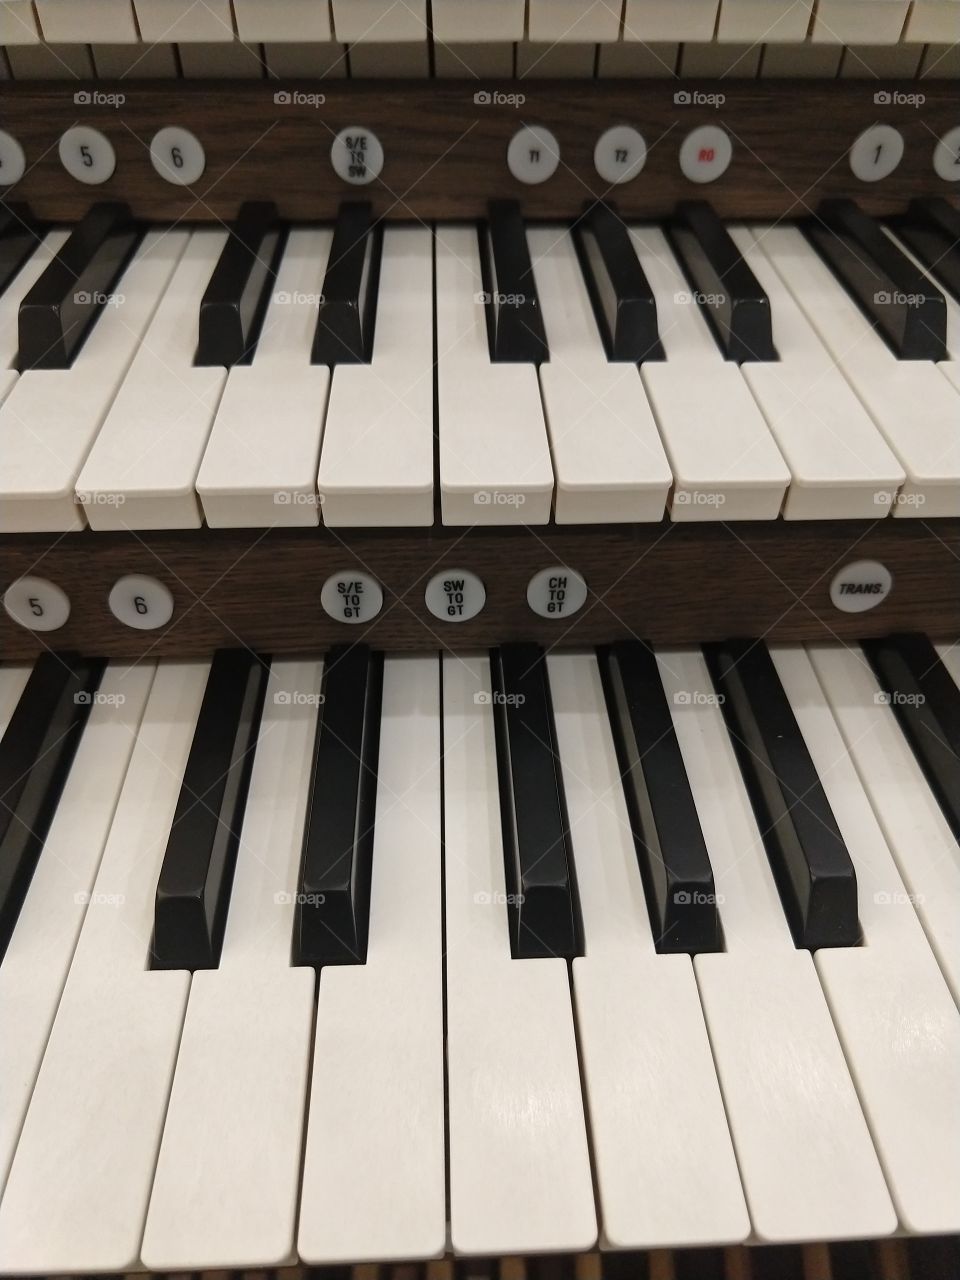 2 rows of piano keys